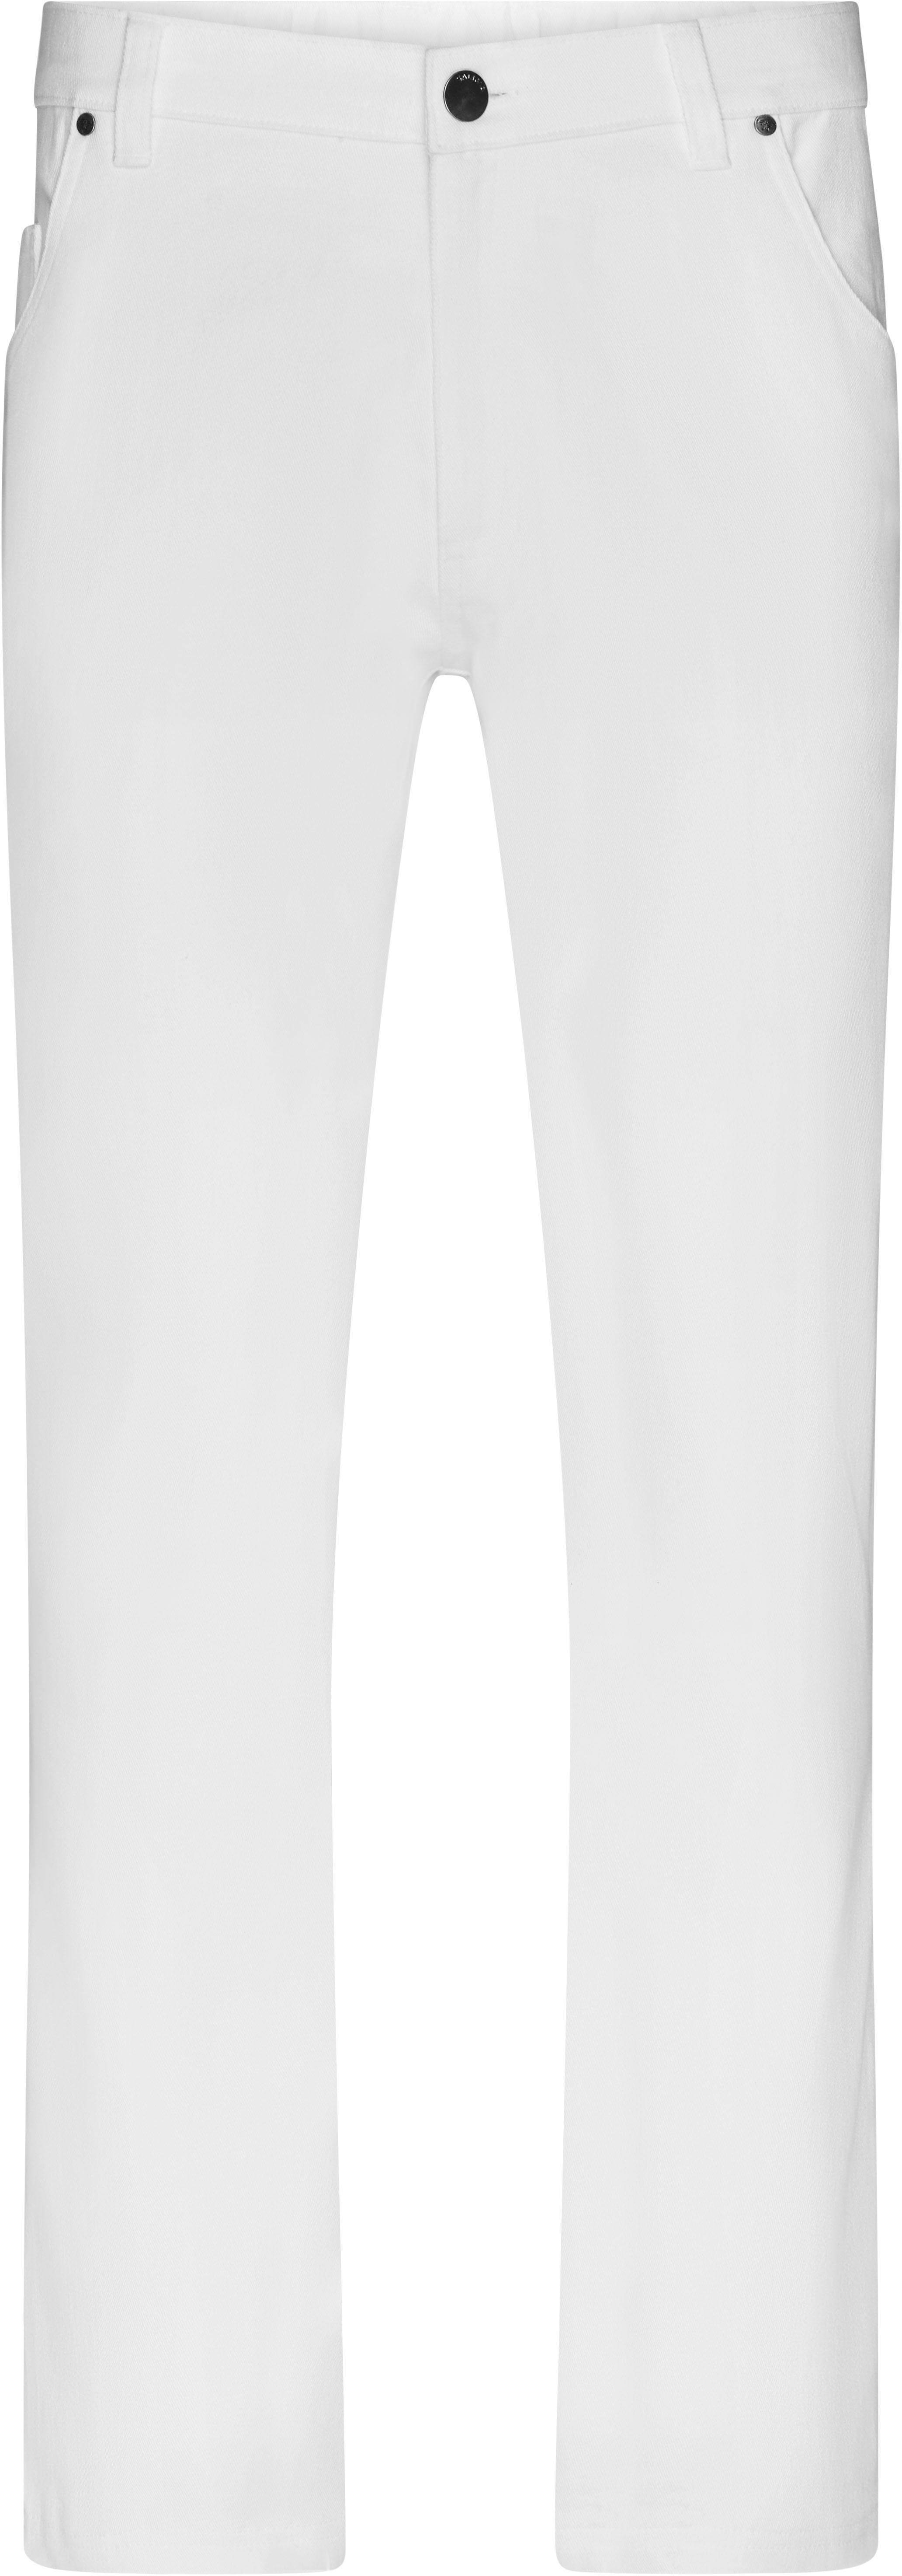 Pánské elastické kalhoty JN 3002 Barva: bílá, Velikost: 56